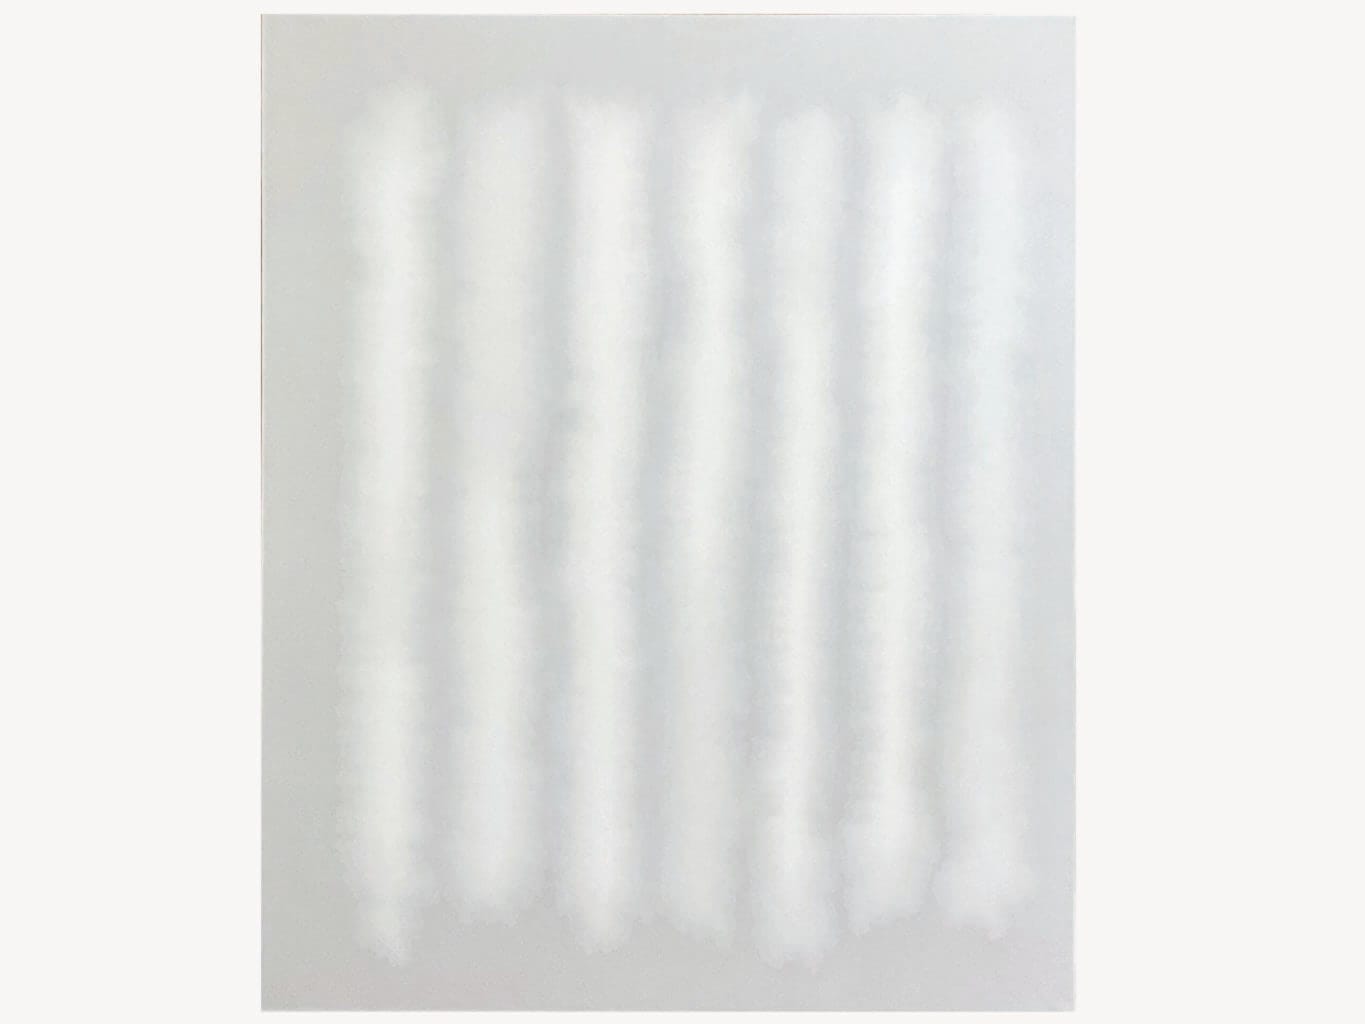 和紙の上に岩絵具や胡粉で無数の層を描き、うつろう光と呼応する作品を生み出す石橋志郎の新作展「Silence」、+1artにて。